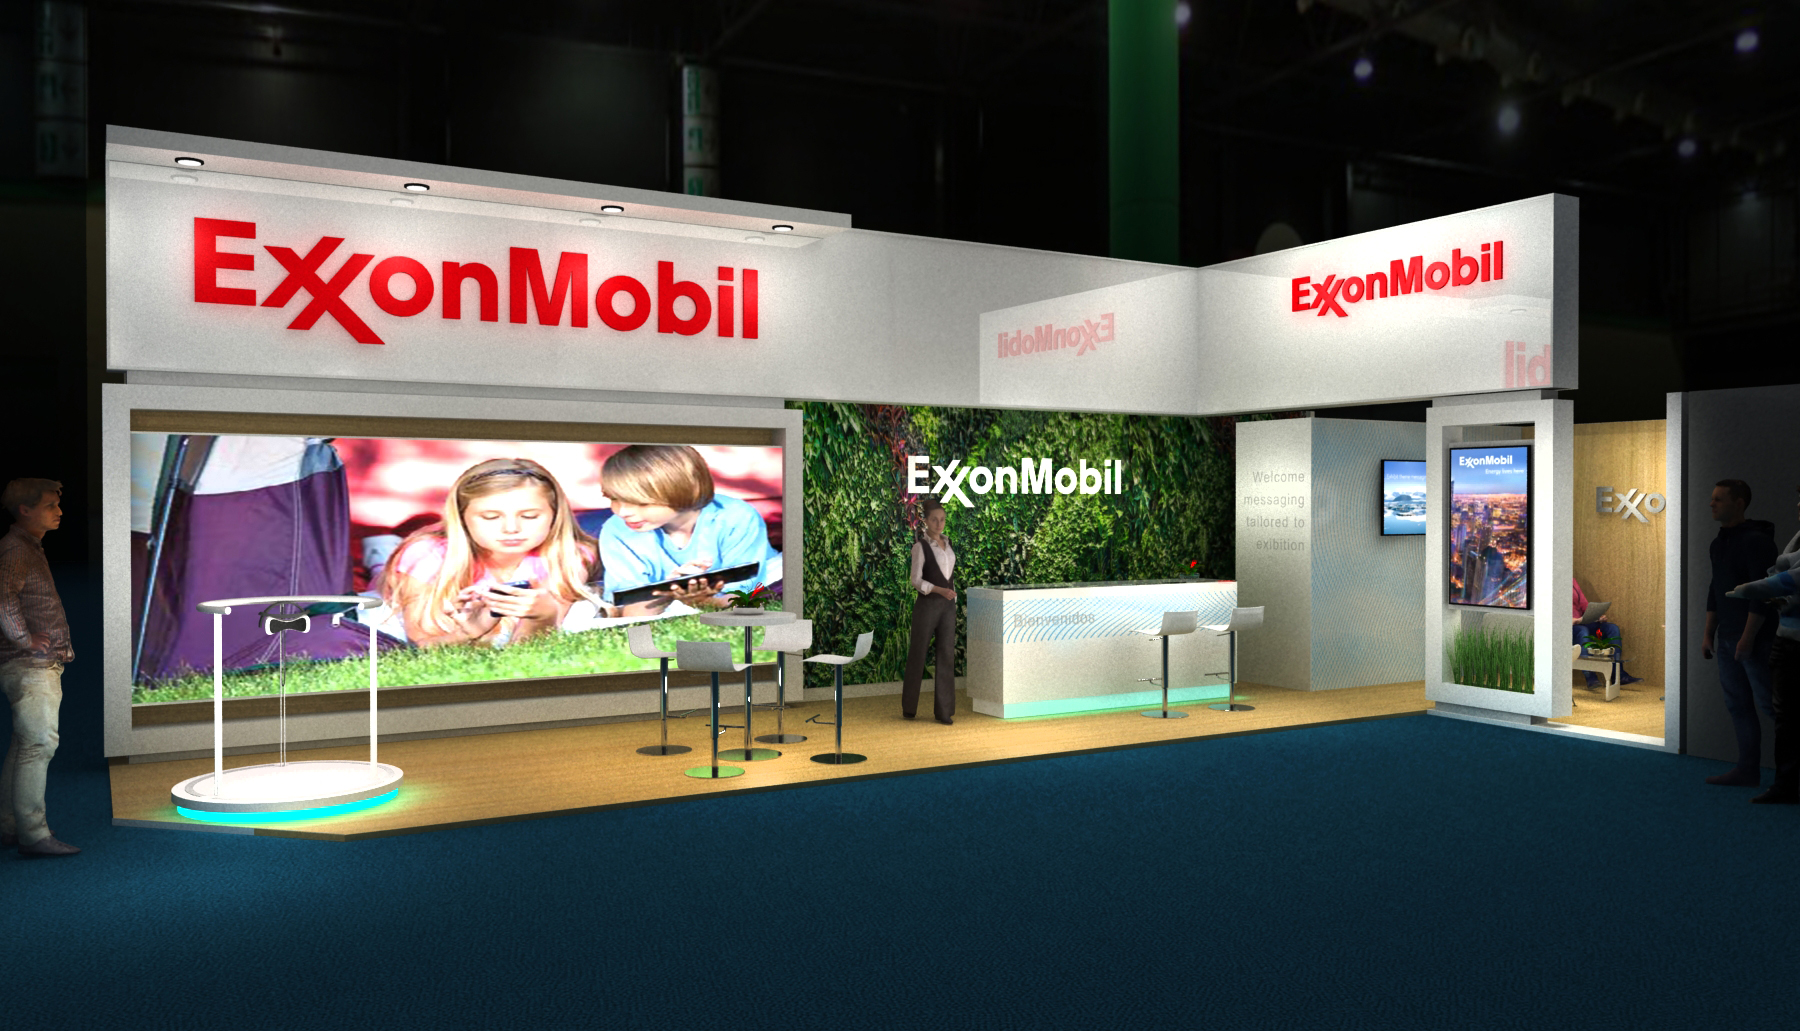 ExxonMobil, Argentina Oil & Gas Patagonia, 2022